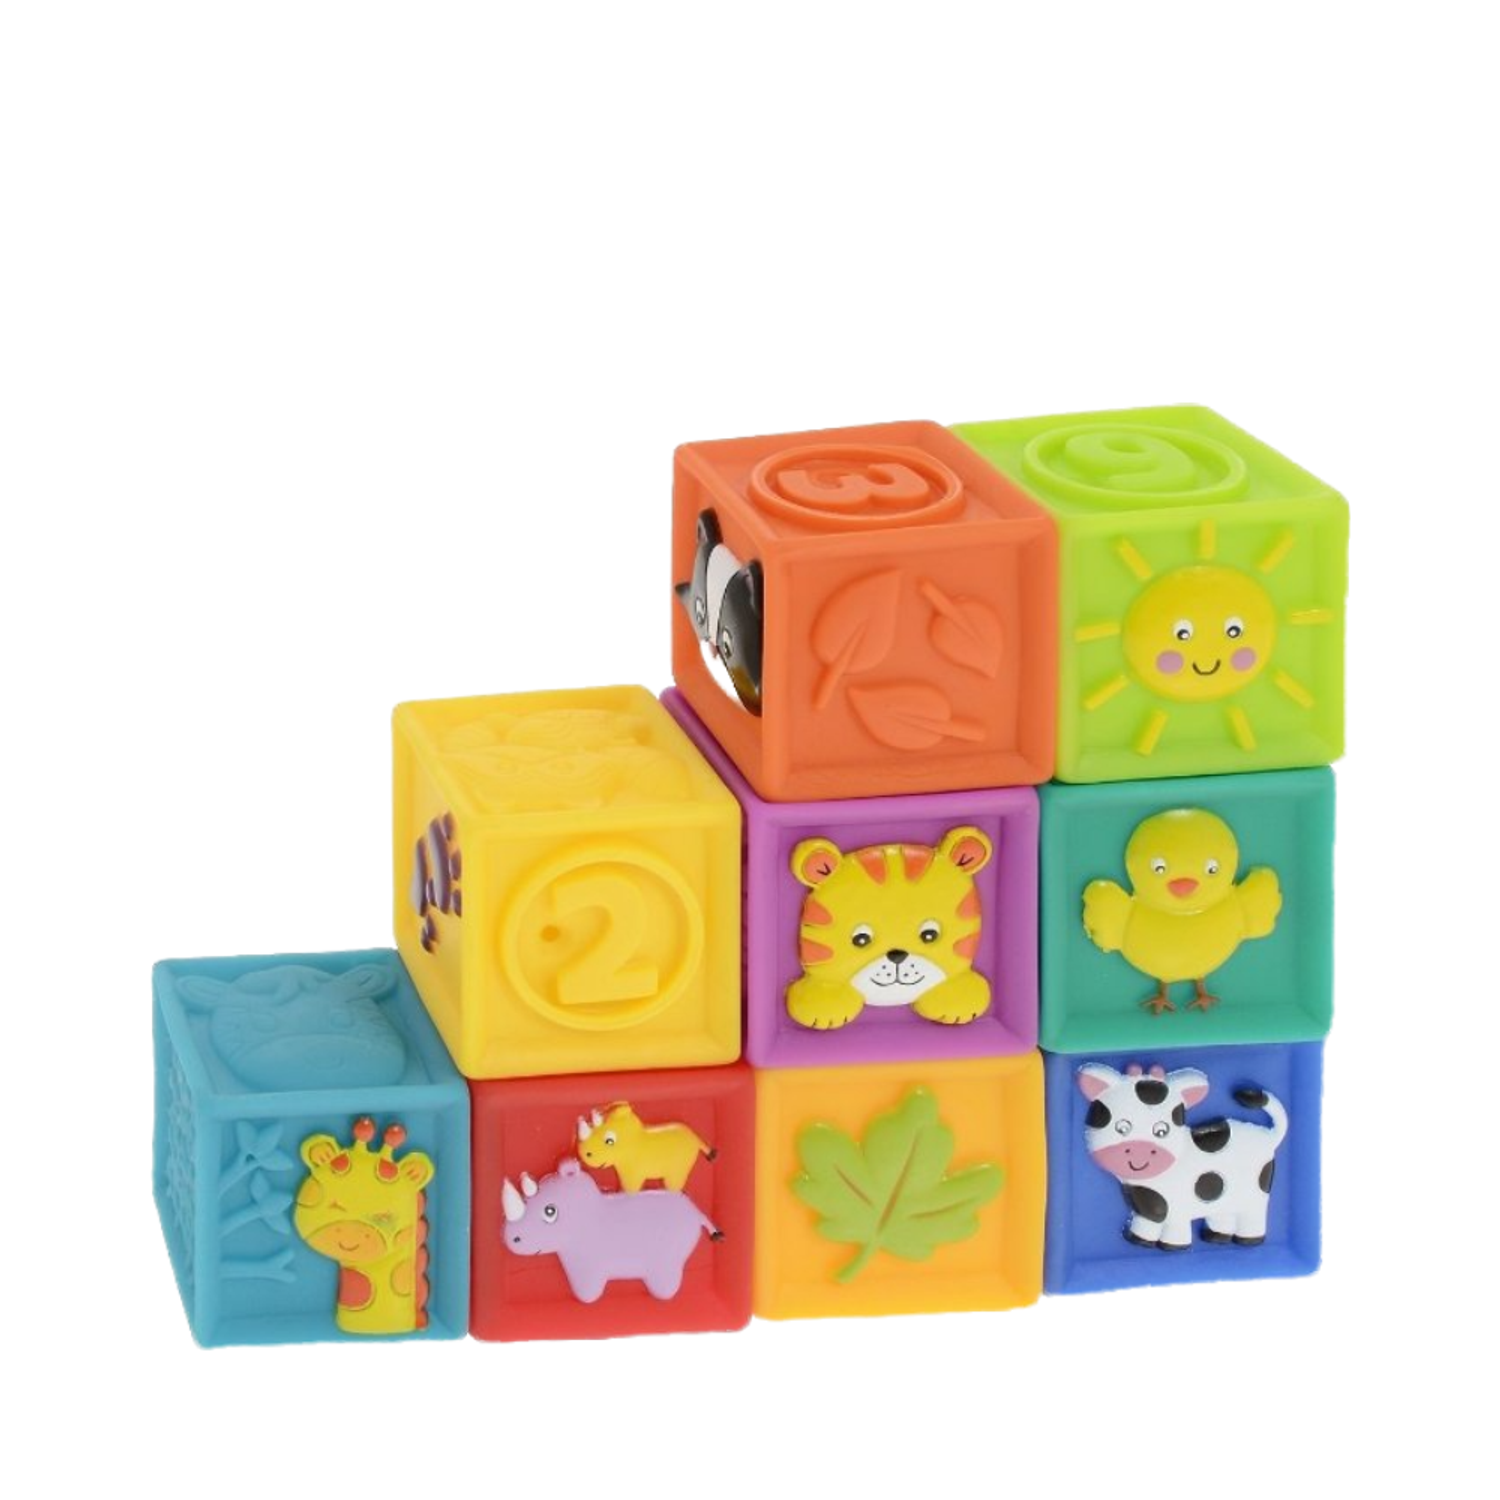 Развивающие мягкие кубики Solmax для детей 9 шт - фото 7